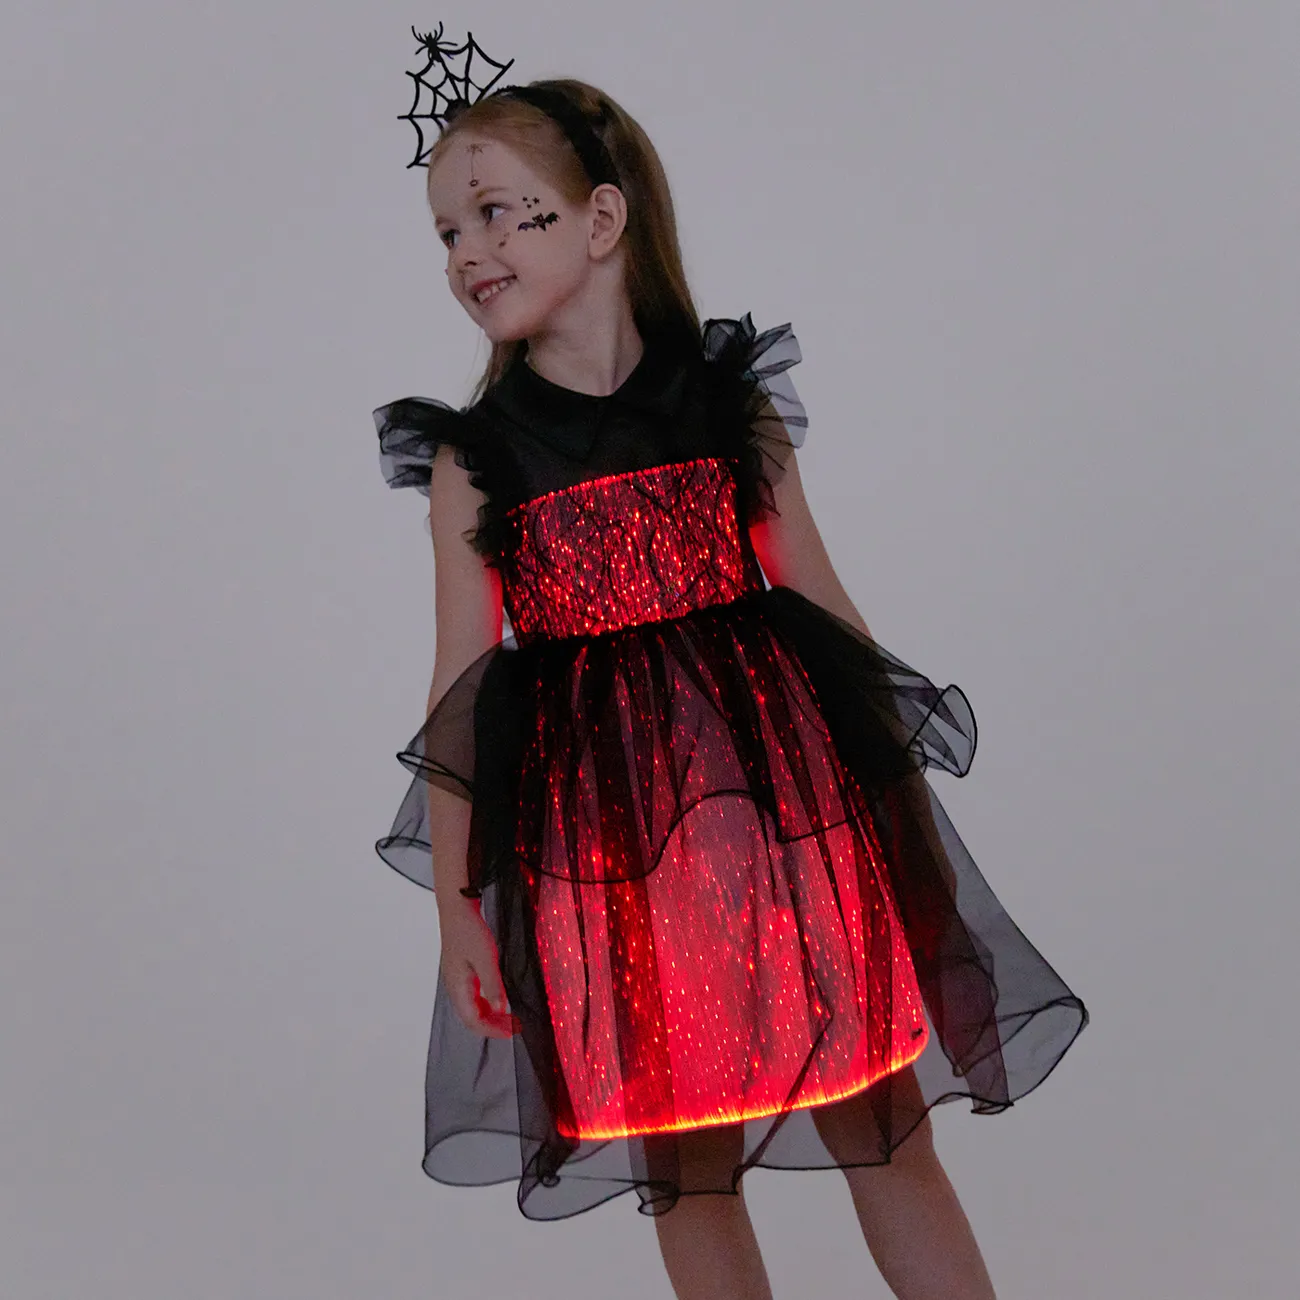 Go-Glow leuchtendes schwarzes Kleid mit leuchtendem mehrlagigem Tüllrock inklusive Controller (eingebauter Akku) schwarz big image 1